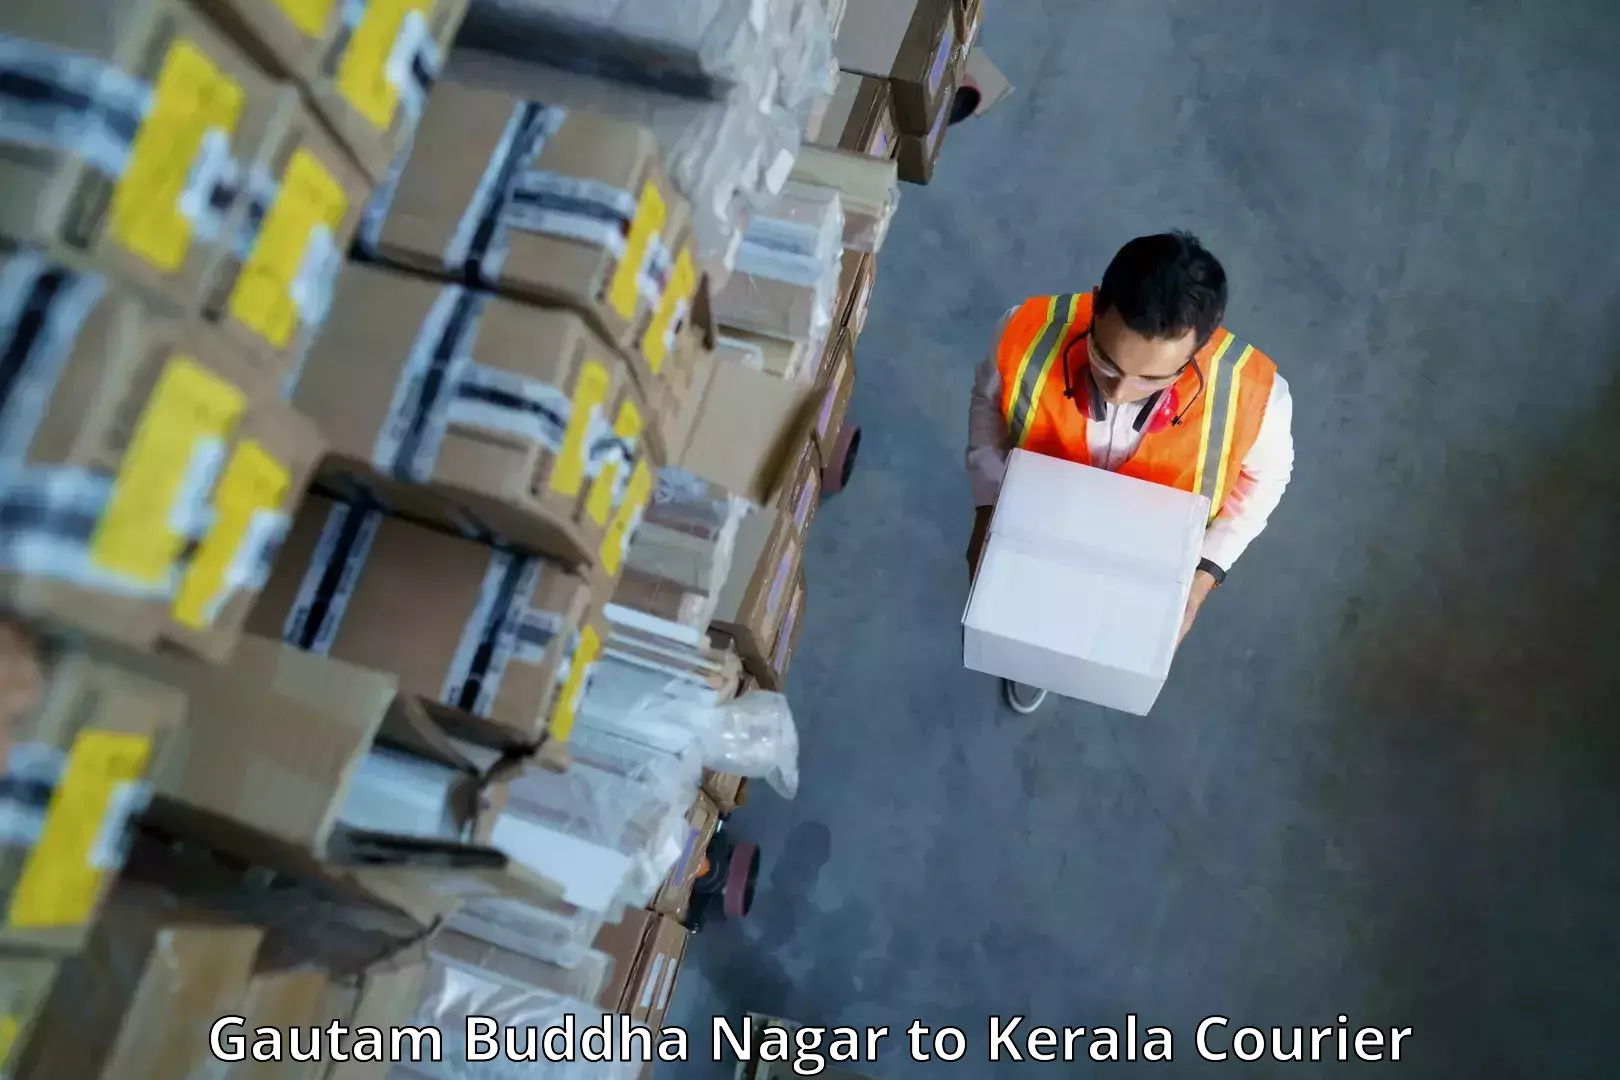 24-hour courier service Gautam Buddha Nagar to Kochi